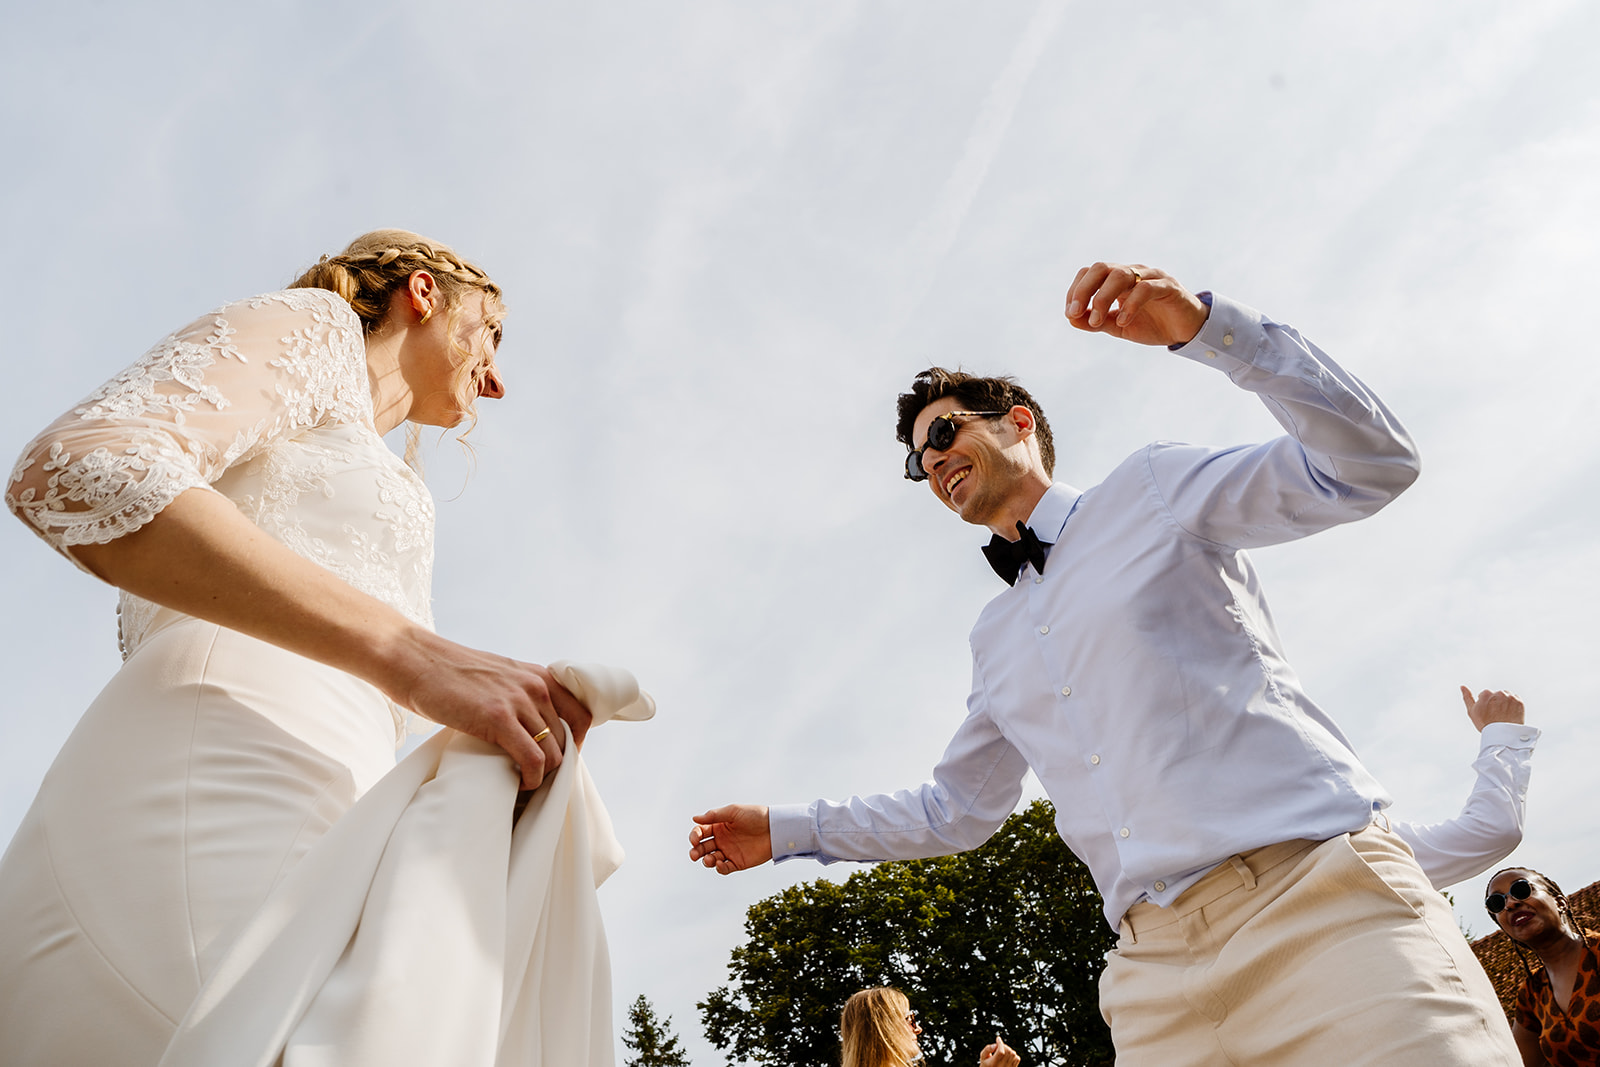 Bruidsfotograaf Maastricht - Bruid en bruidegom dansen tijdens dansworkshop op receptie van de bruiloft